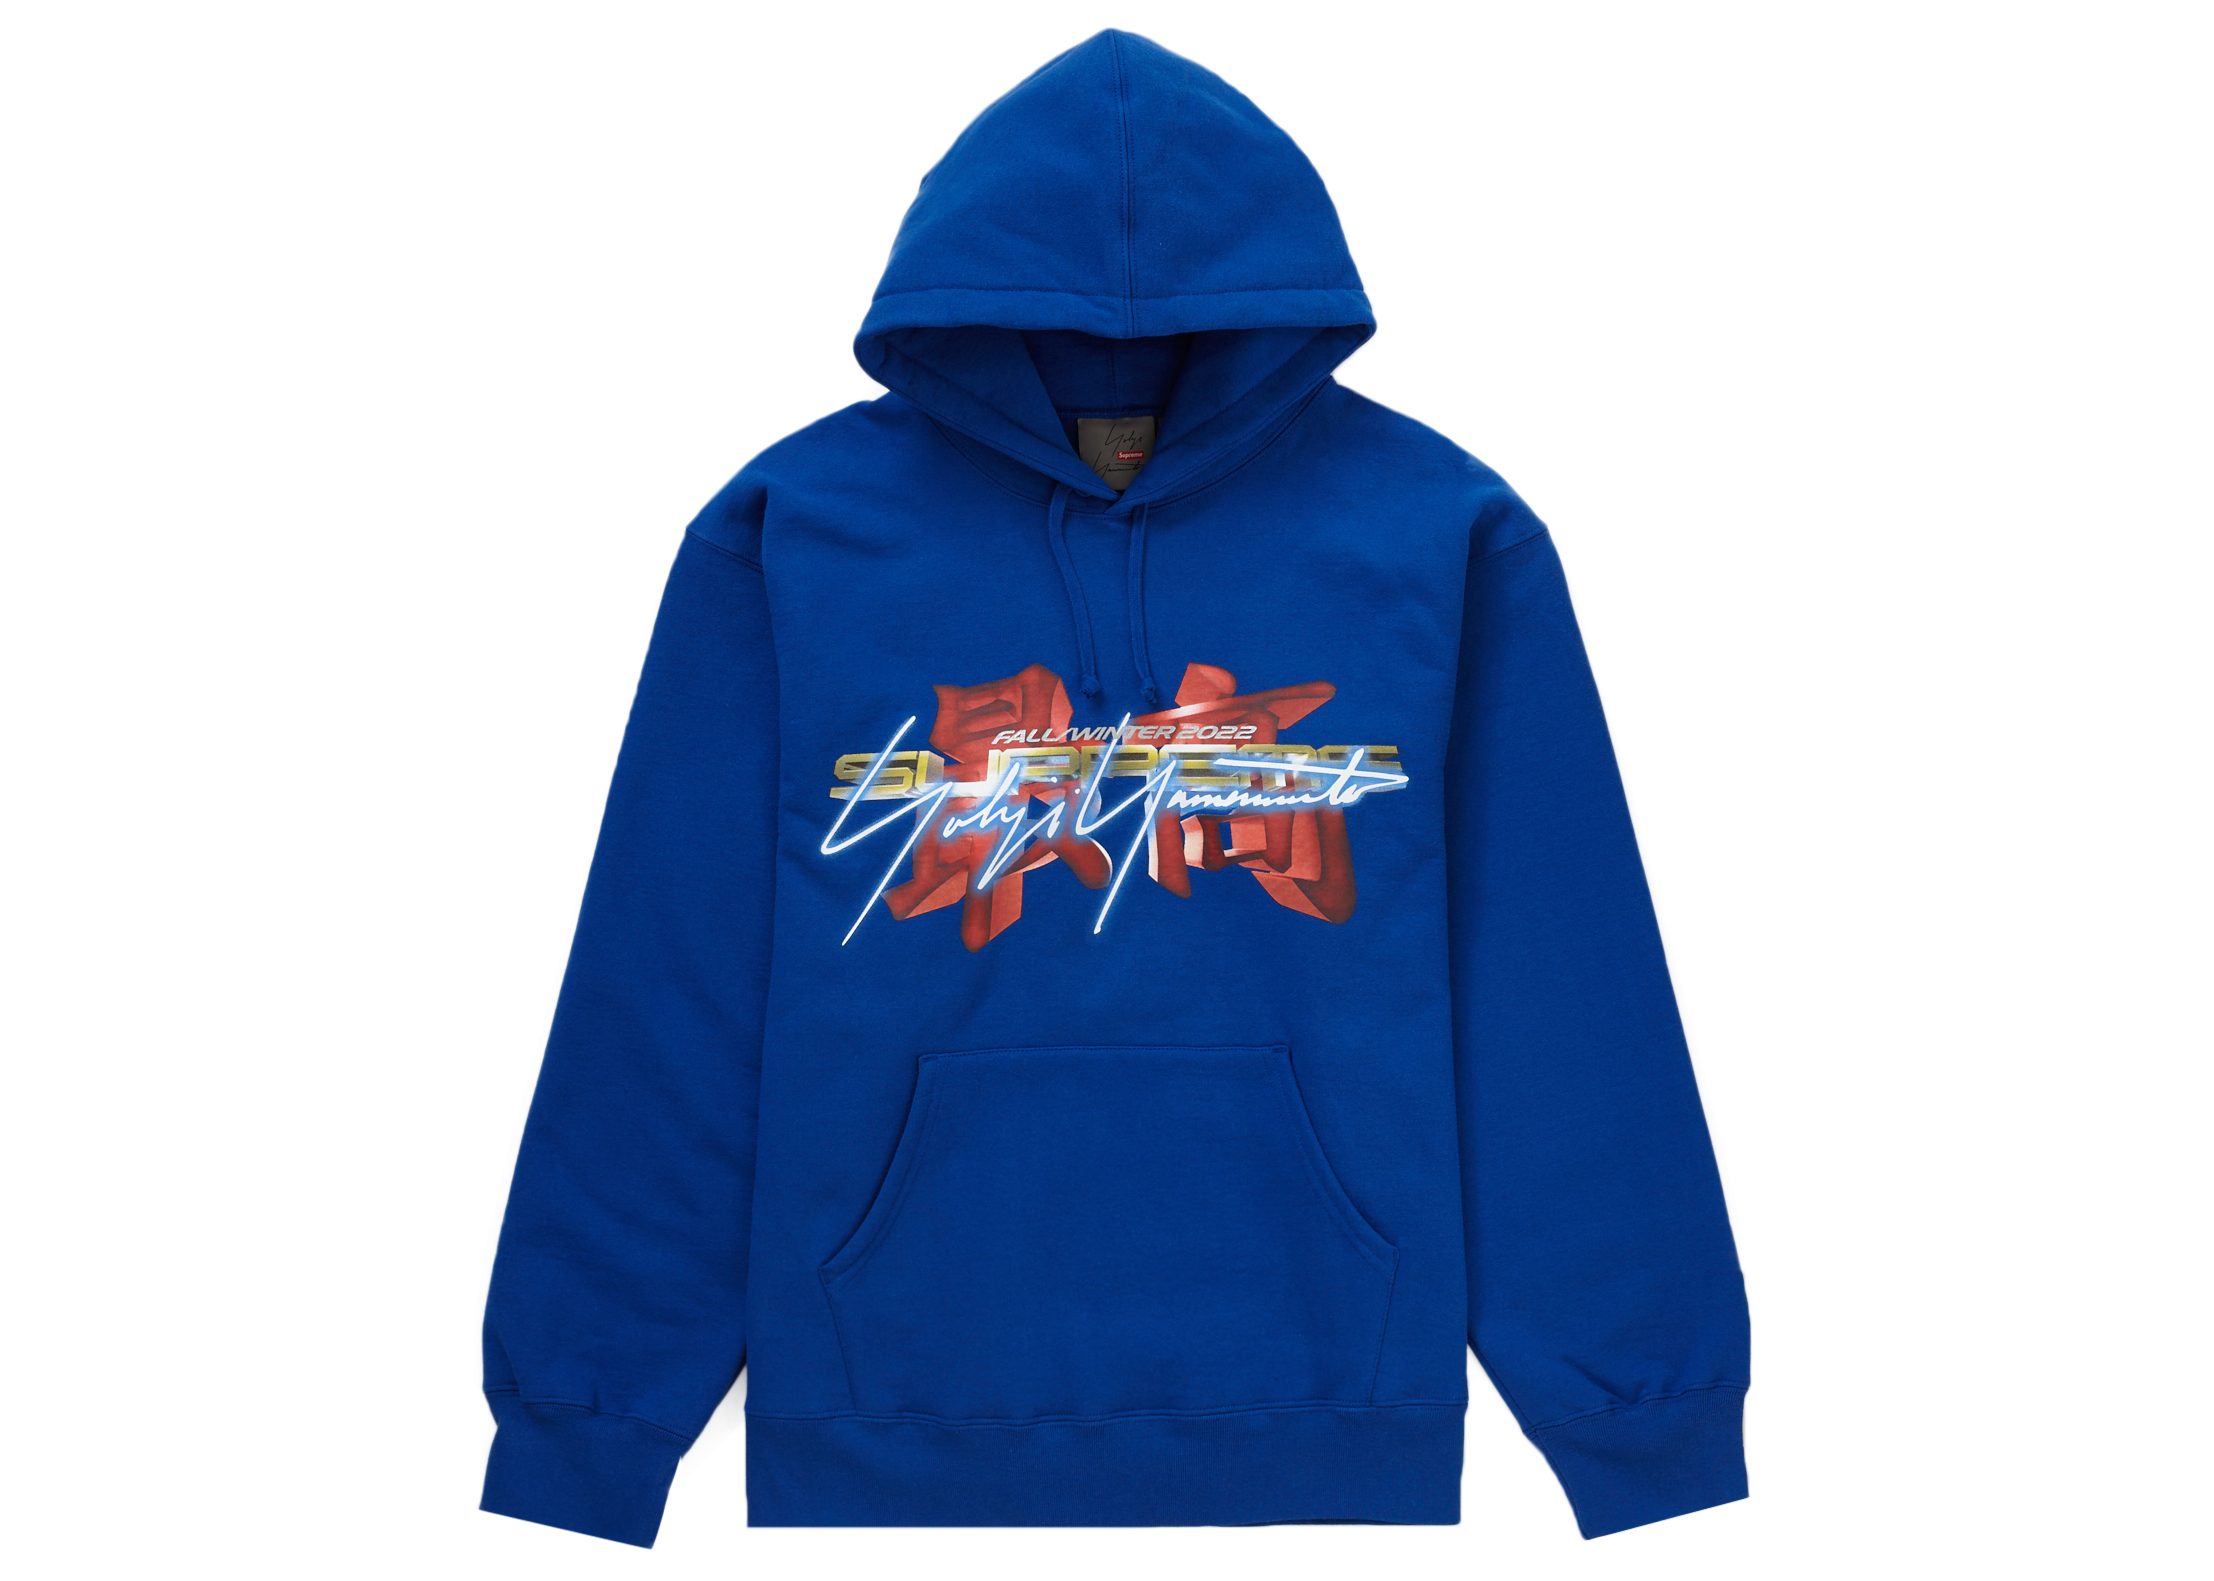 Buy Supreme x Yohji Yamamoto x TEKKEN Hooded Sweatshirt 'Stone